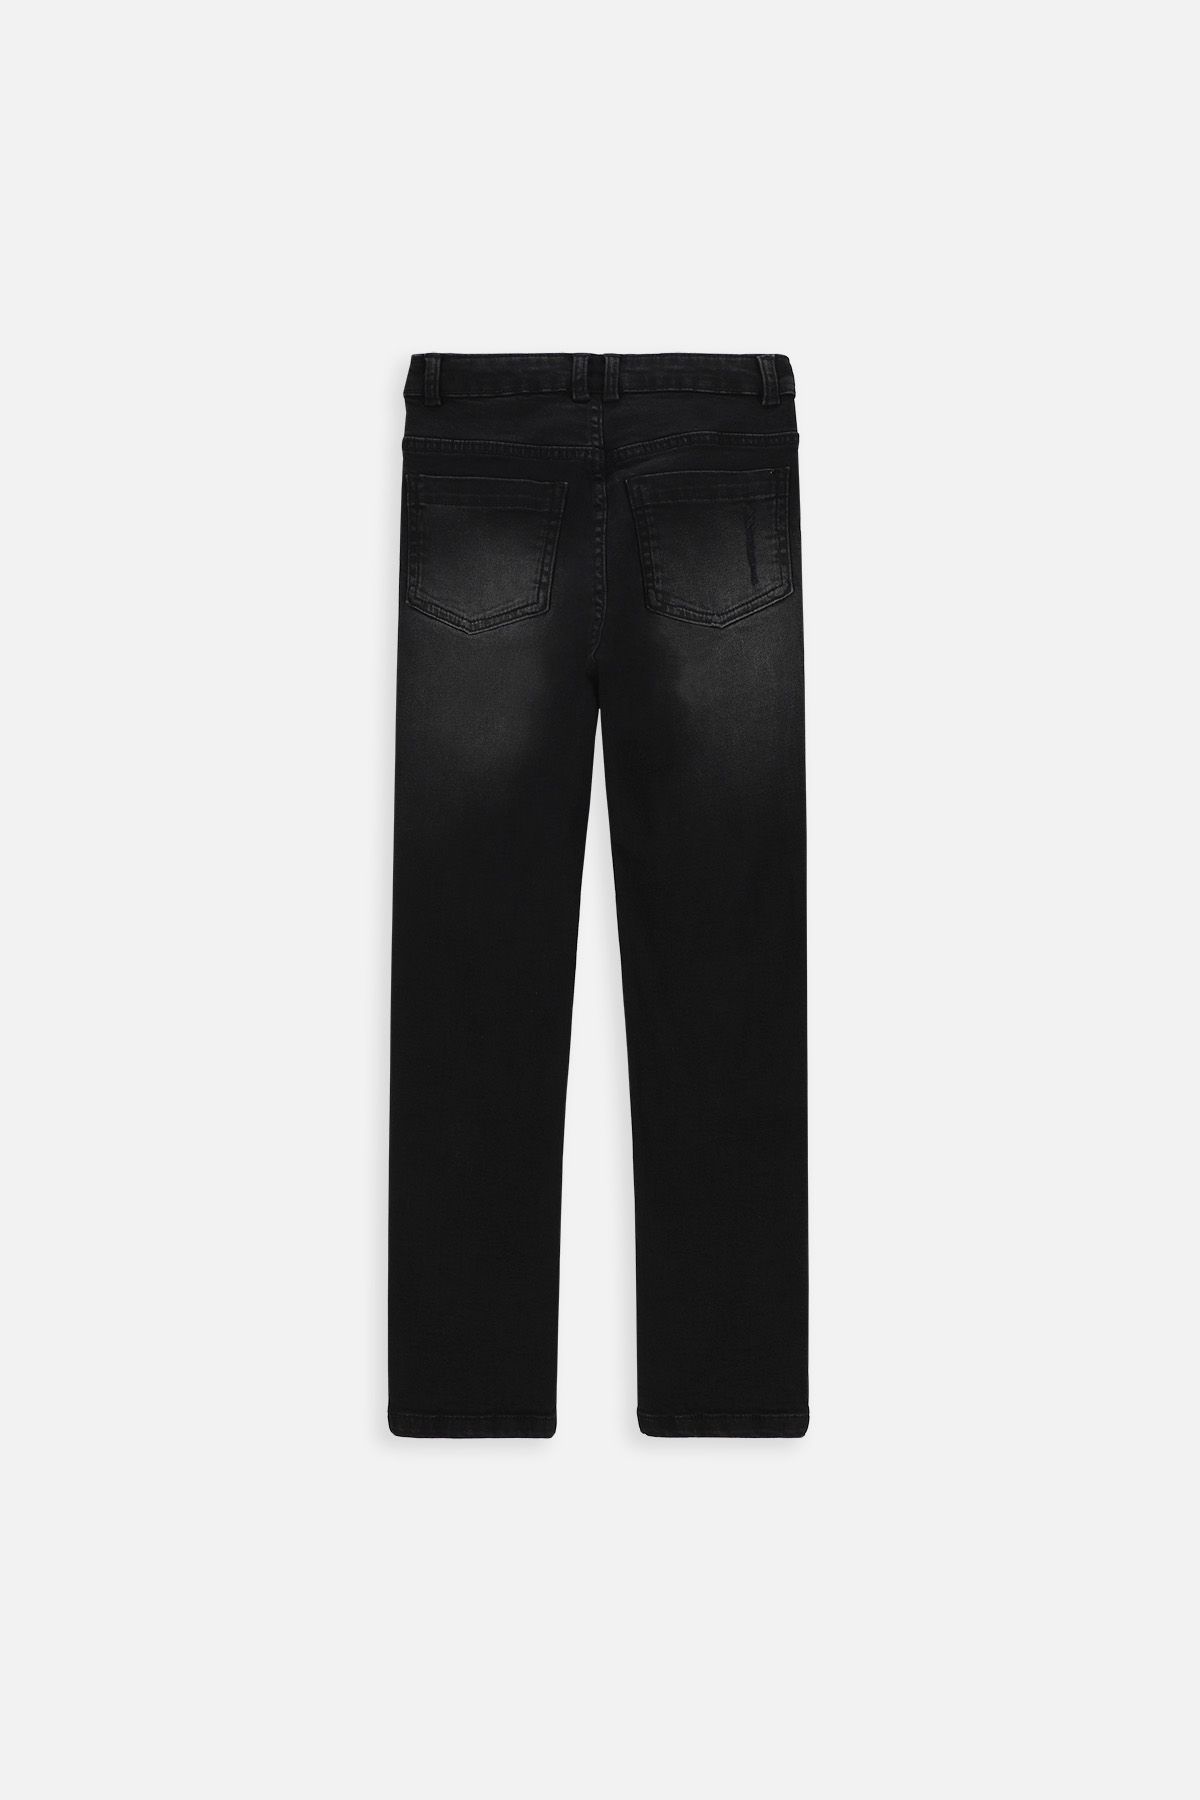 Spodnie jeansowe czarne ze zwężaną nogawką, SLIM LEG 2222041